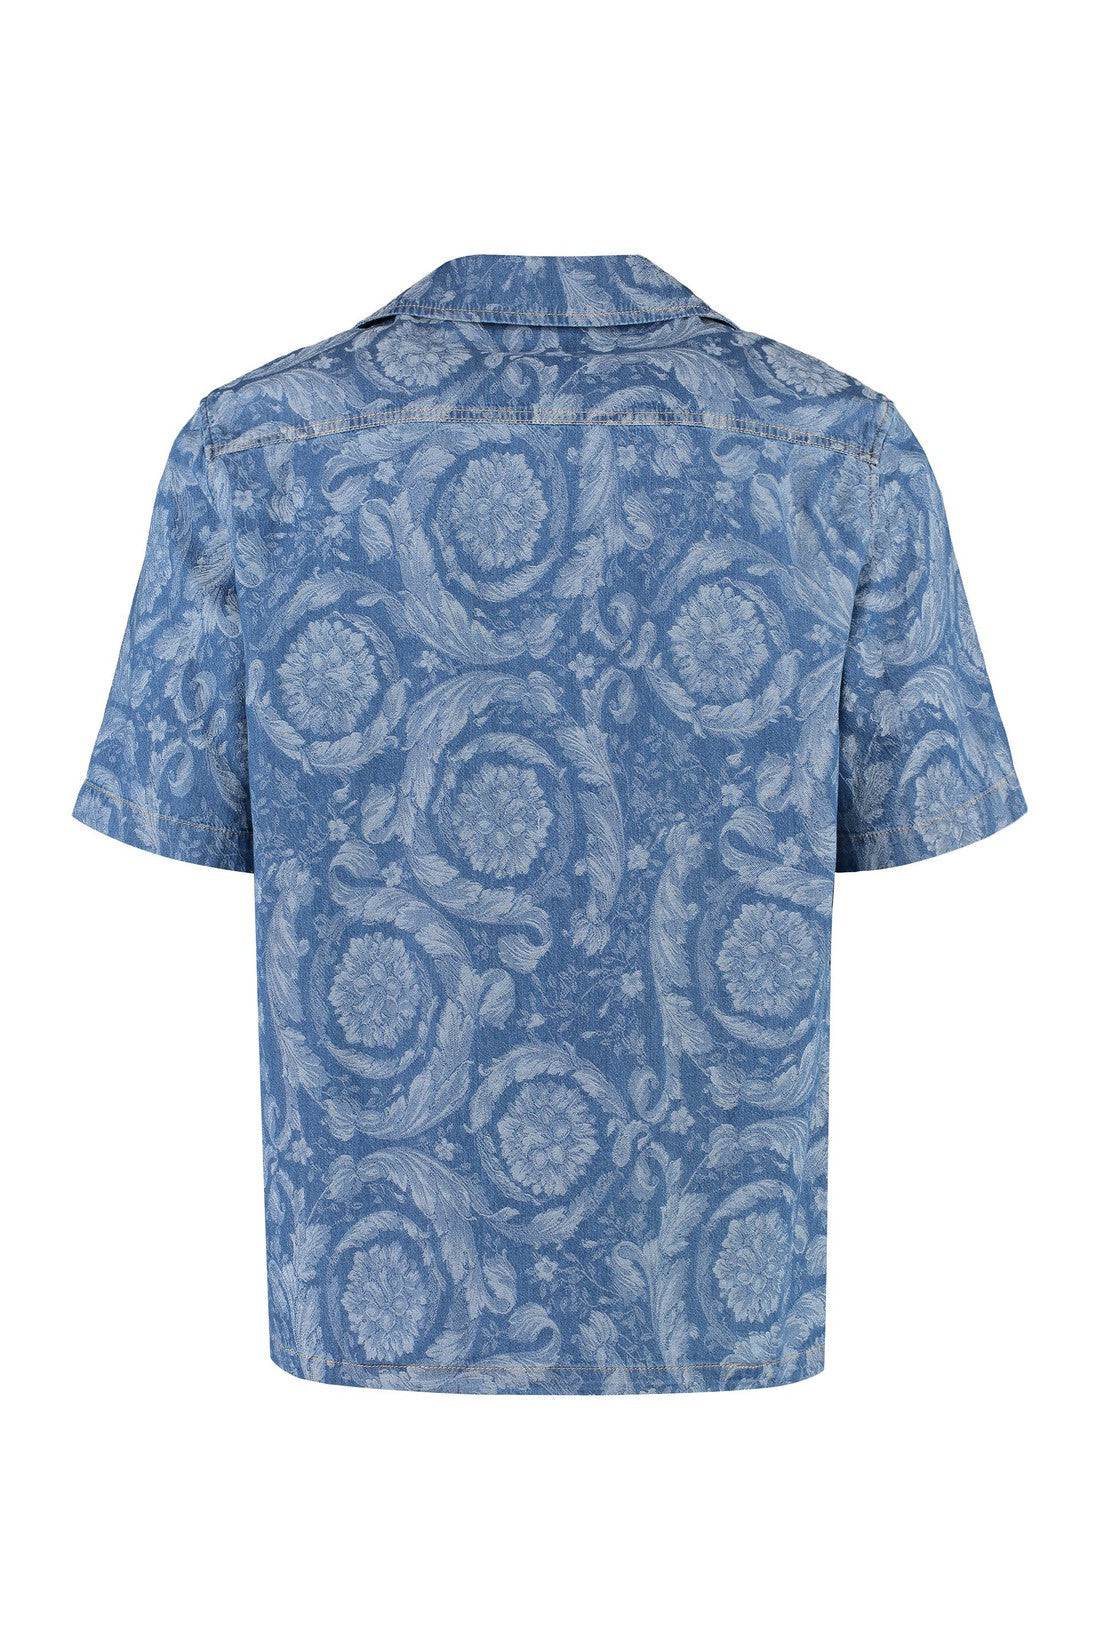 Versace-OUTLET-SALE-Floral print cotton shirt-ARCHIVIST